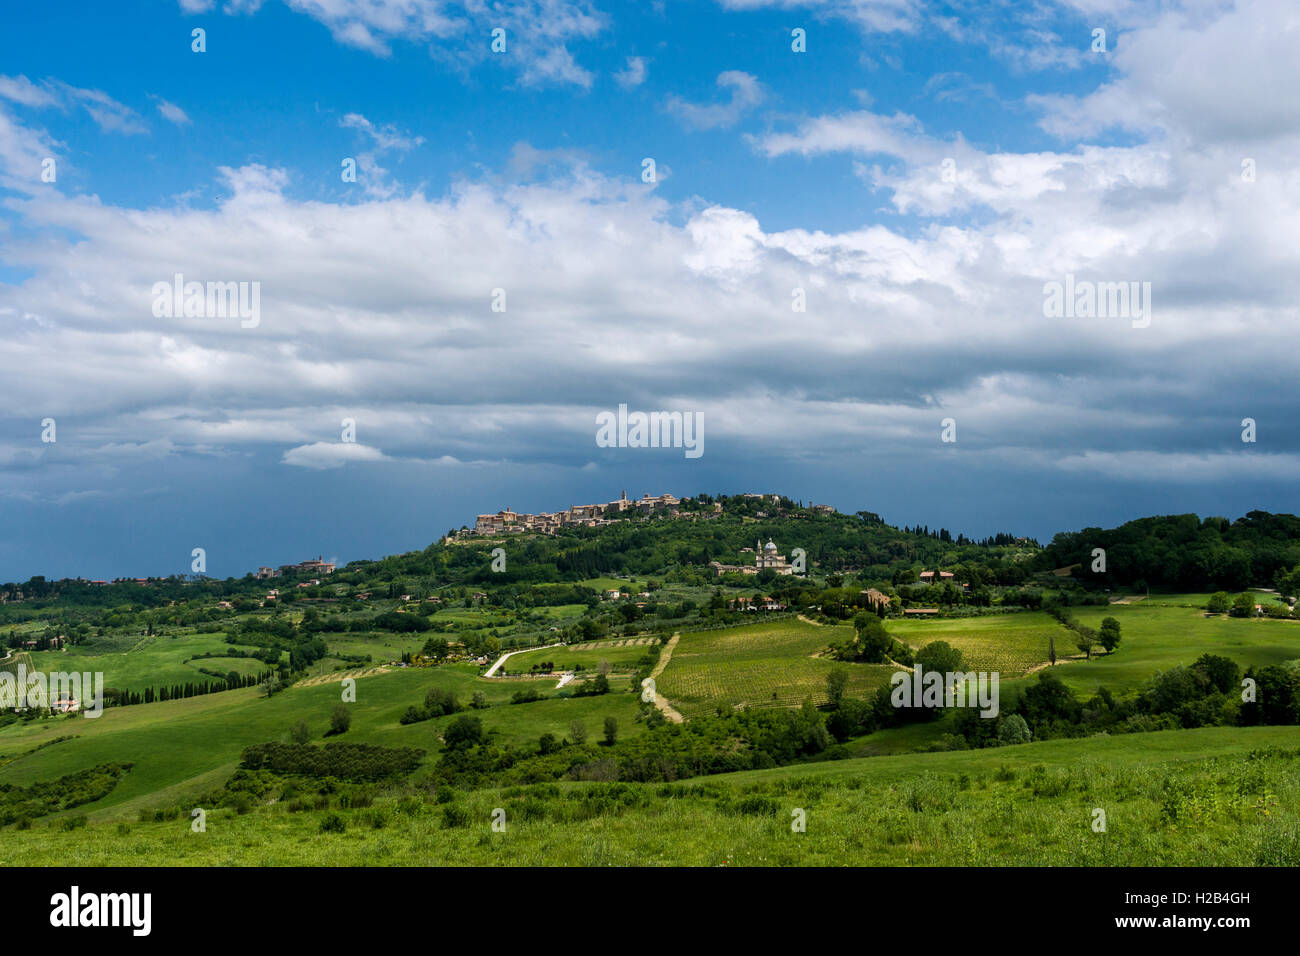 Une ville de Val d'Orcia, sur une colline, entouré de fermes et de champs, Montepulciano, Toscane, Italie Banque D'Images